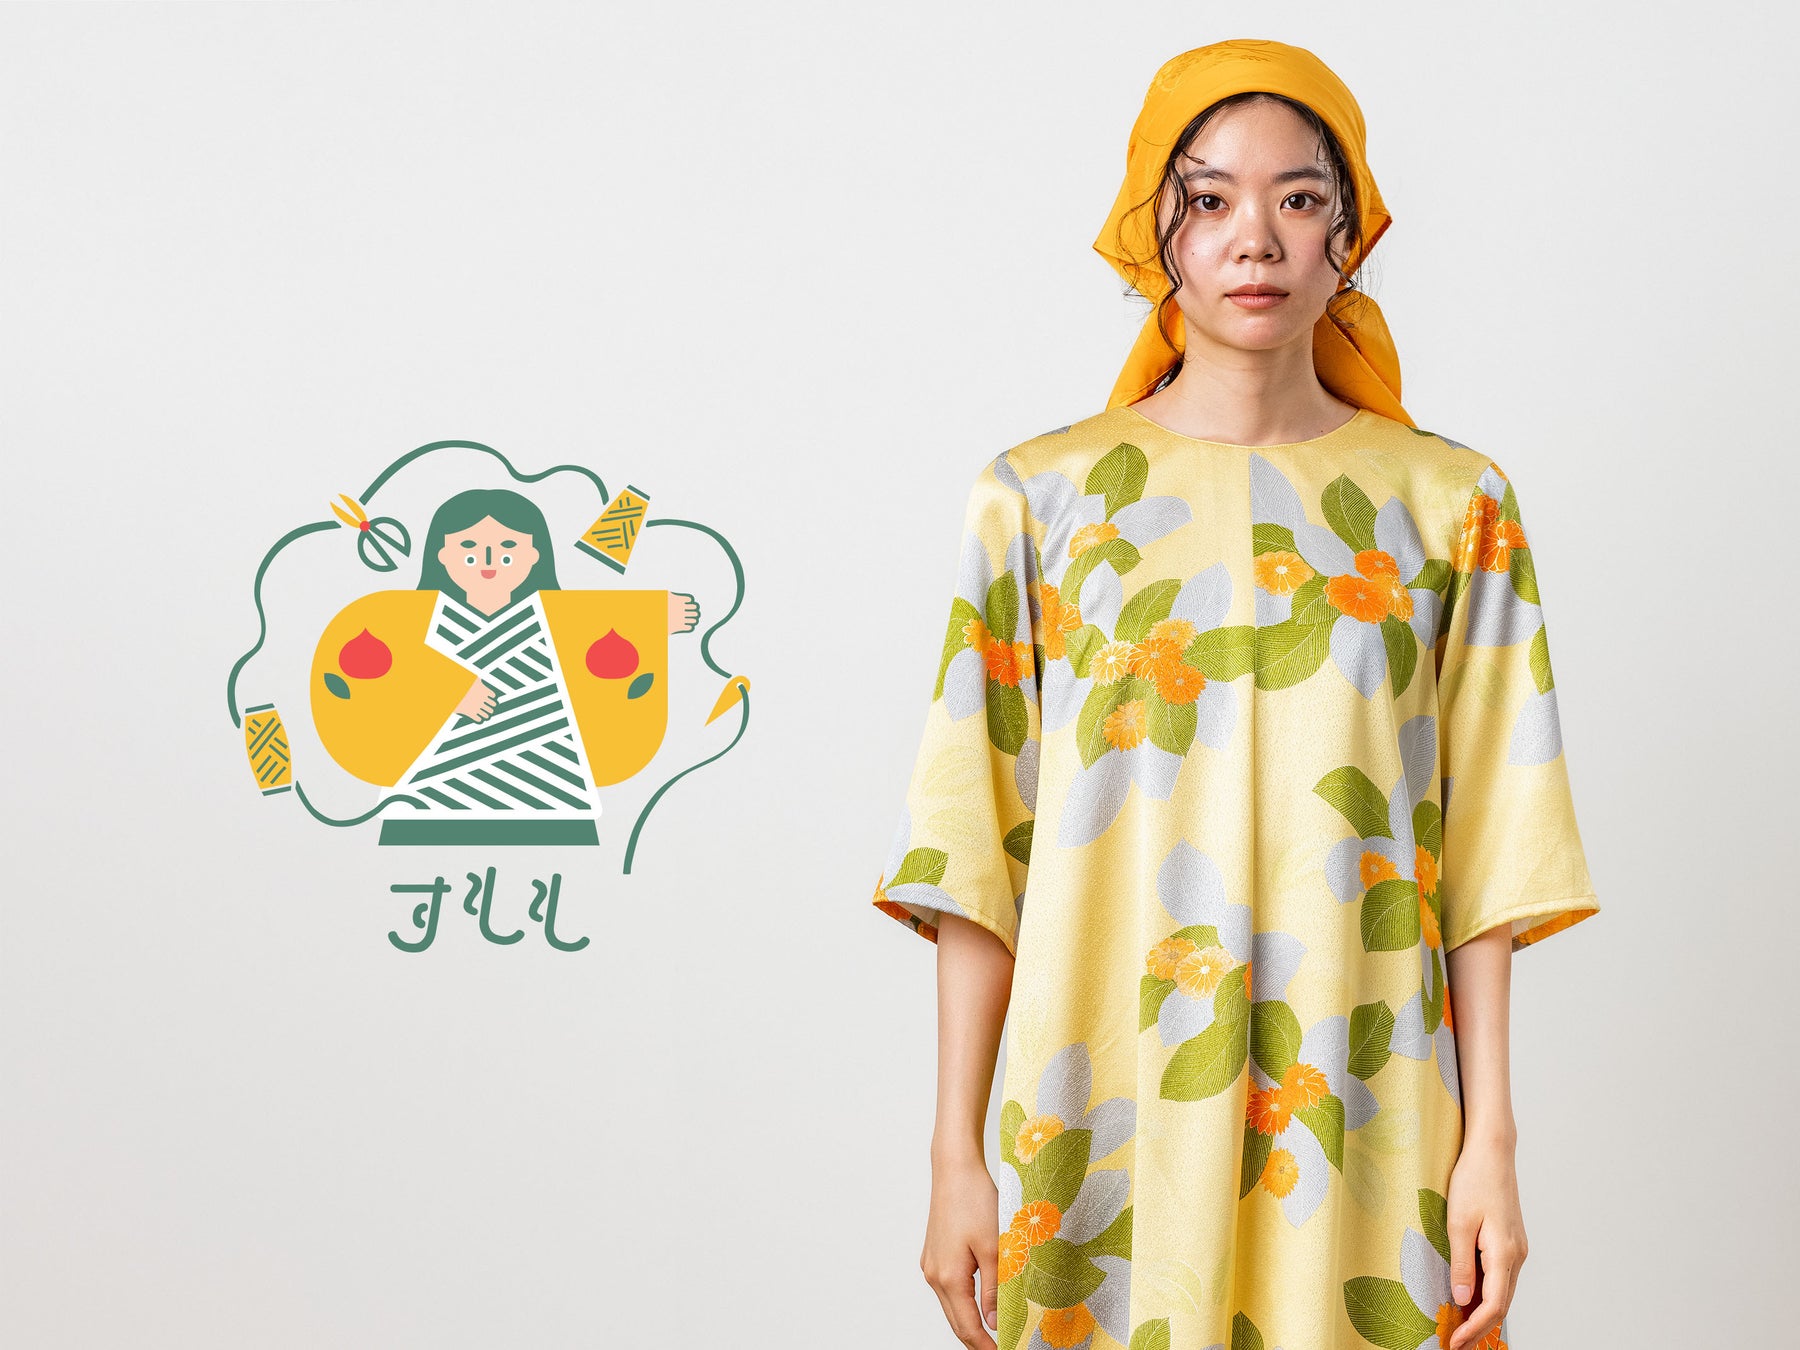 「と、きもの(and Kimono)」シリーズ第一弾 「すもも」発表1000点以上の着物リメイク実績を持つTSURUTOが贈る オリジナル着物リメイクコレクション